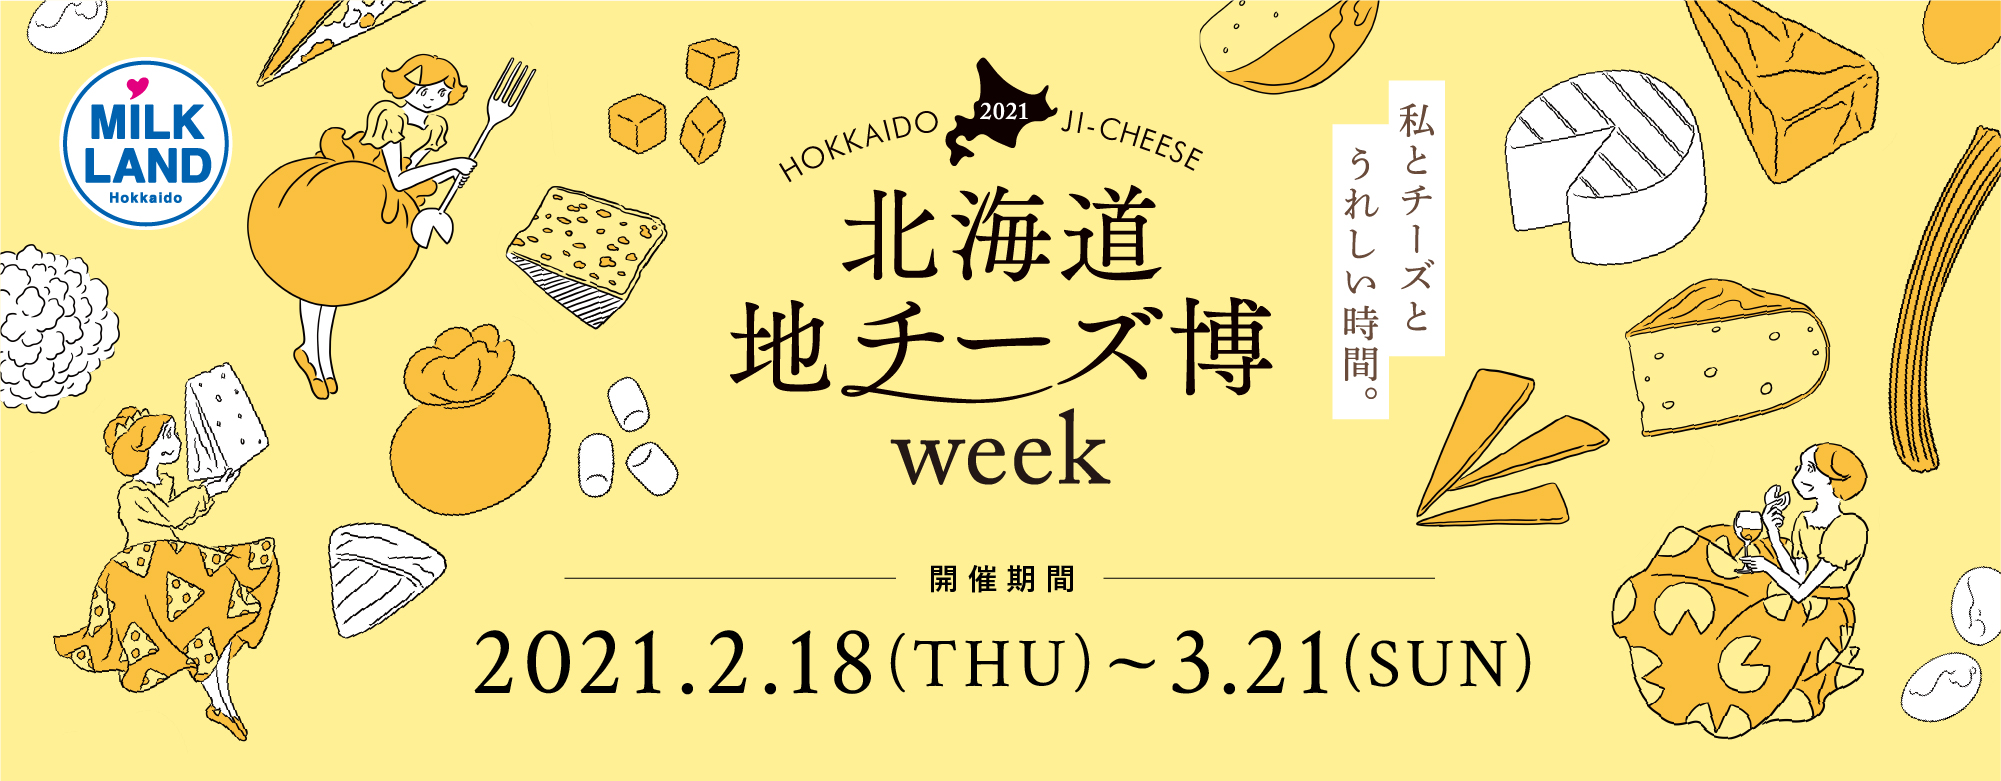 絶品チーズが集結する 北海道地チーズ博 Week が開催中 お出かけ Hanako ママ Web